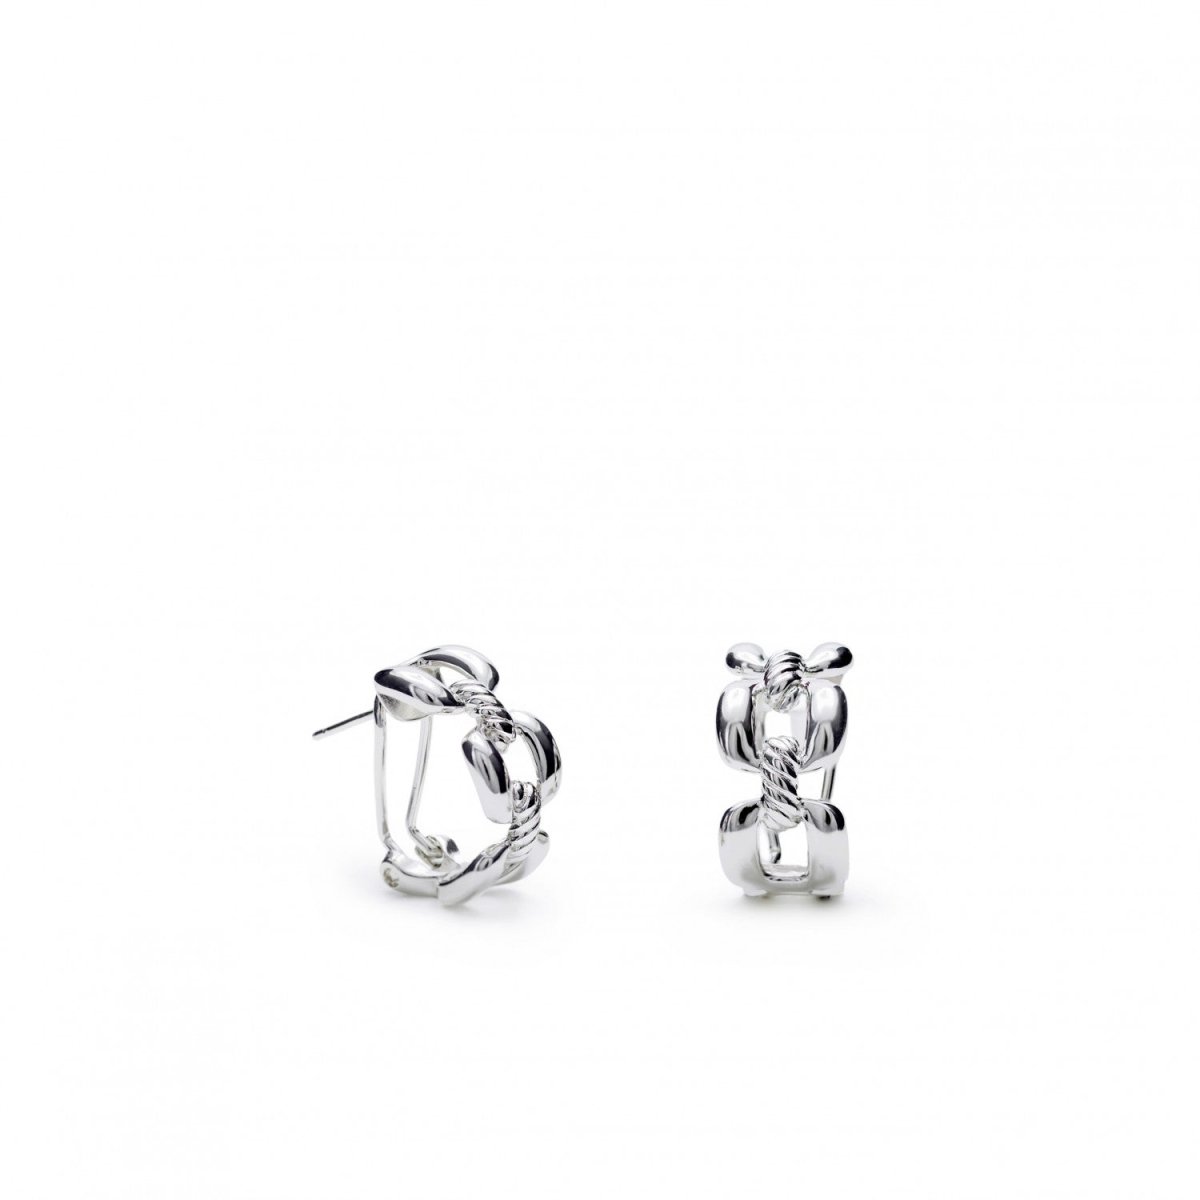 Earrings - Omega clasp semi-open chain design earrings